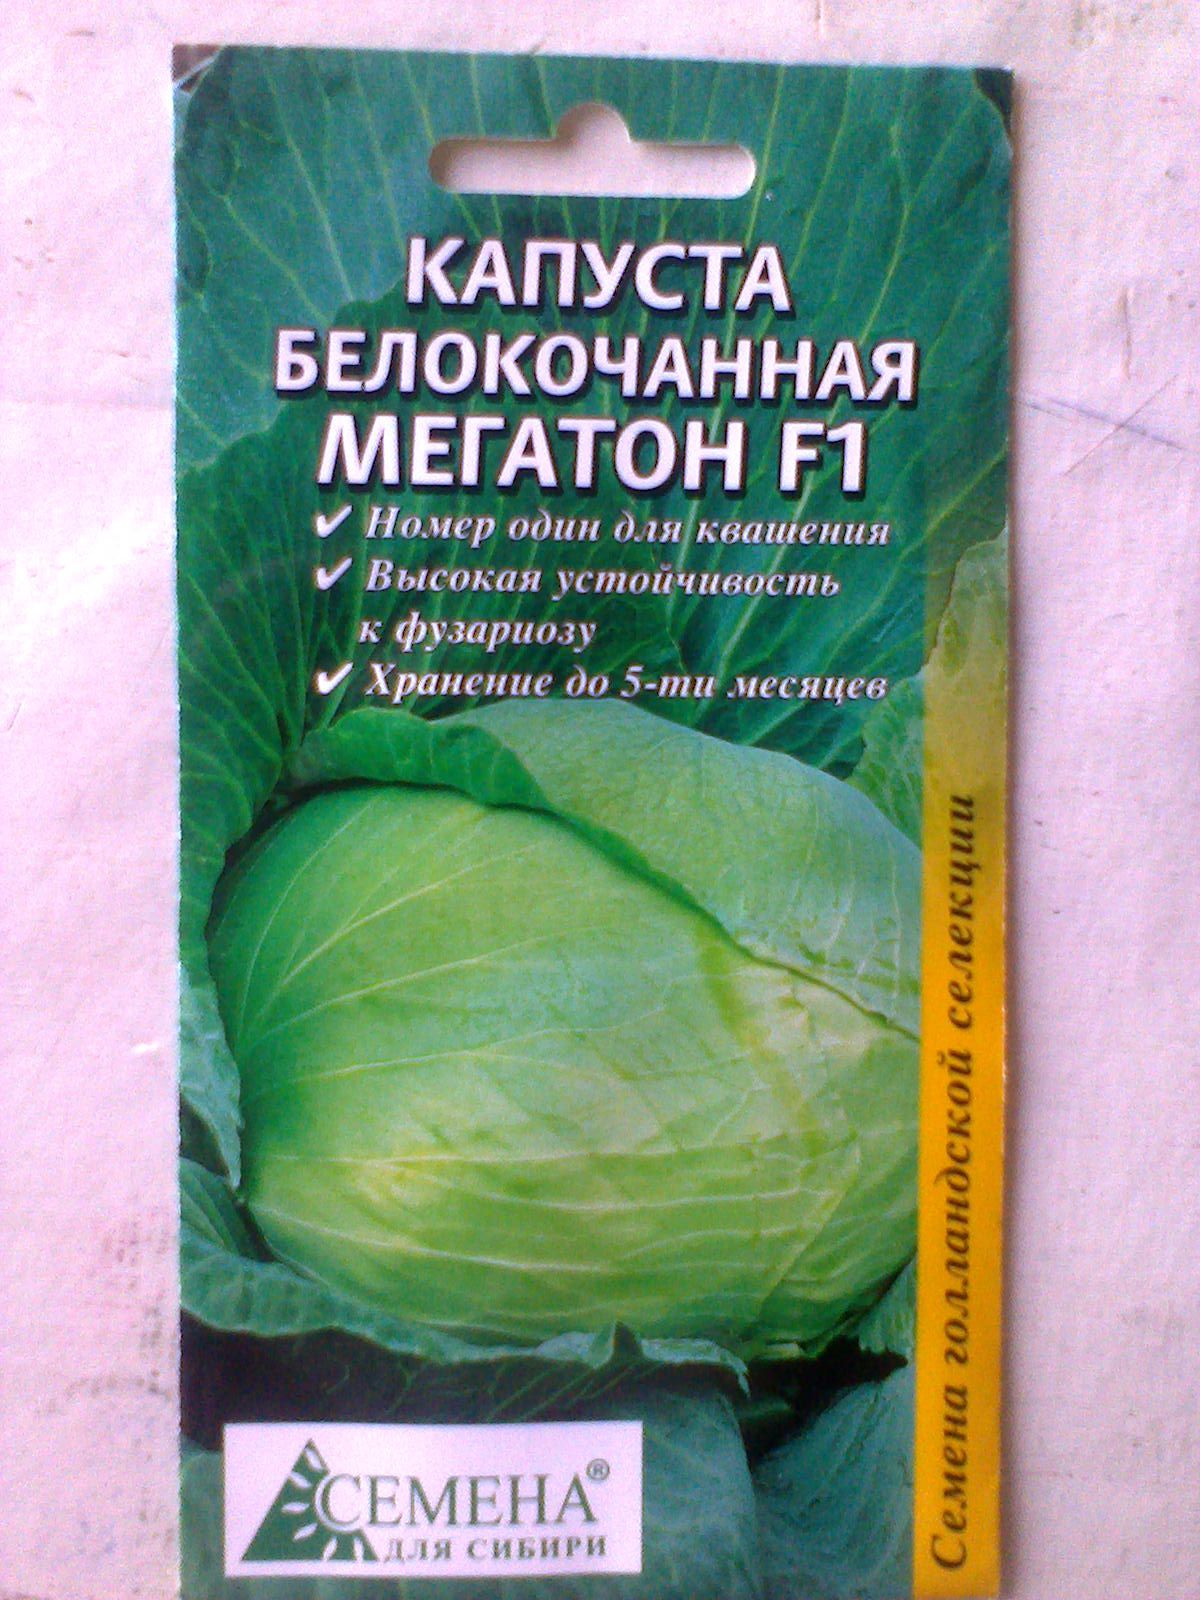 Капуста белокочанная мегатон f1: описание сорта, выращивание рассадным способом, фото